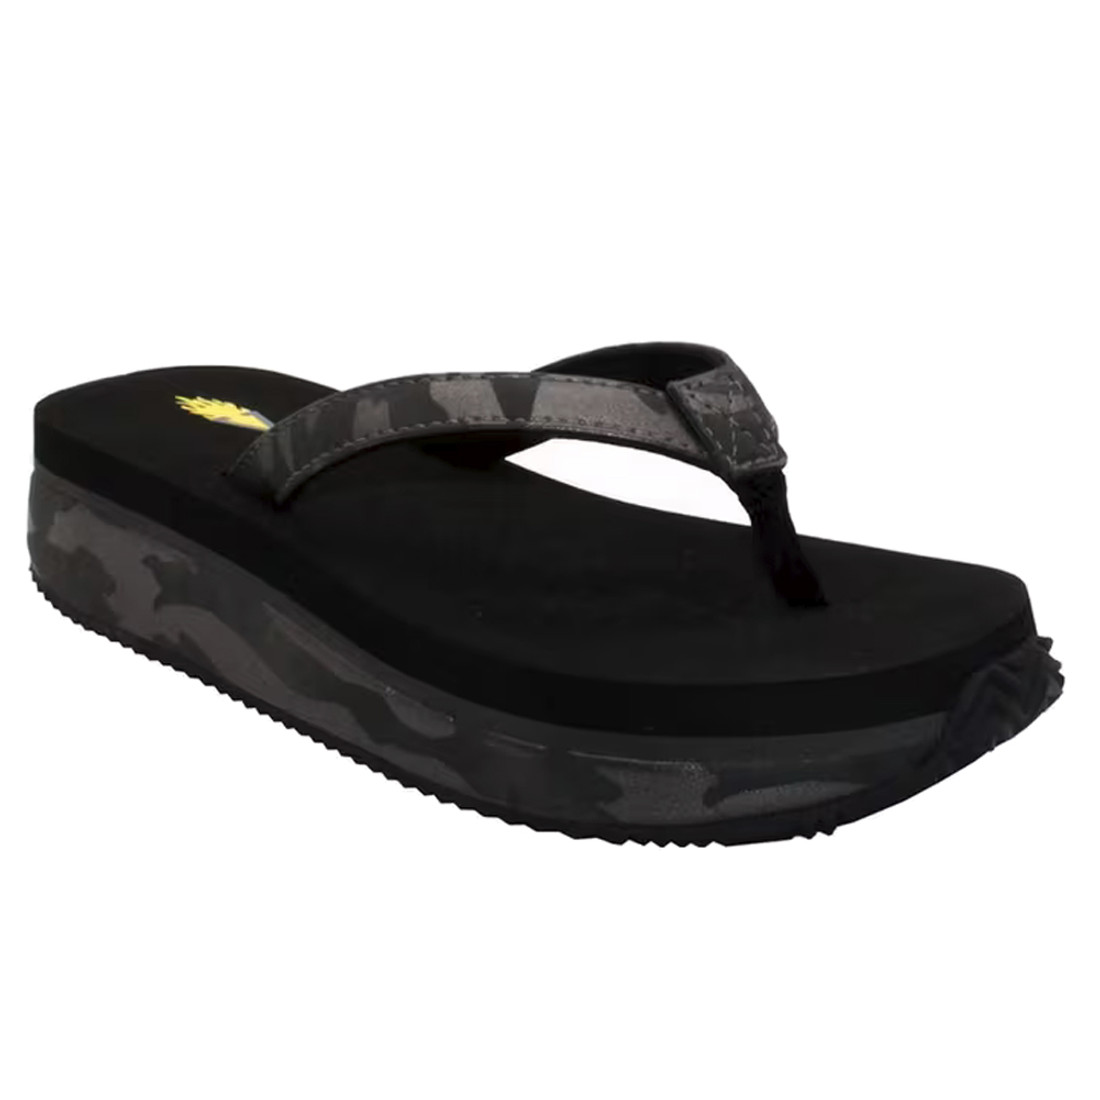 Volatile Footwear - UNTAMED - Flip Flop Wedge Sandal